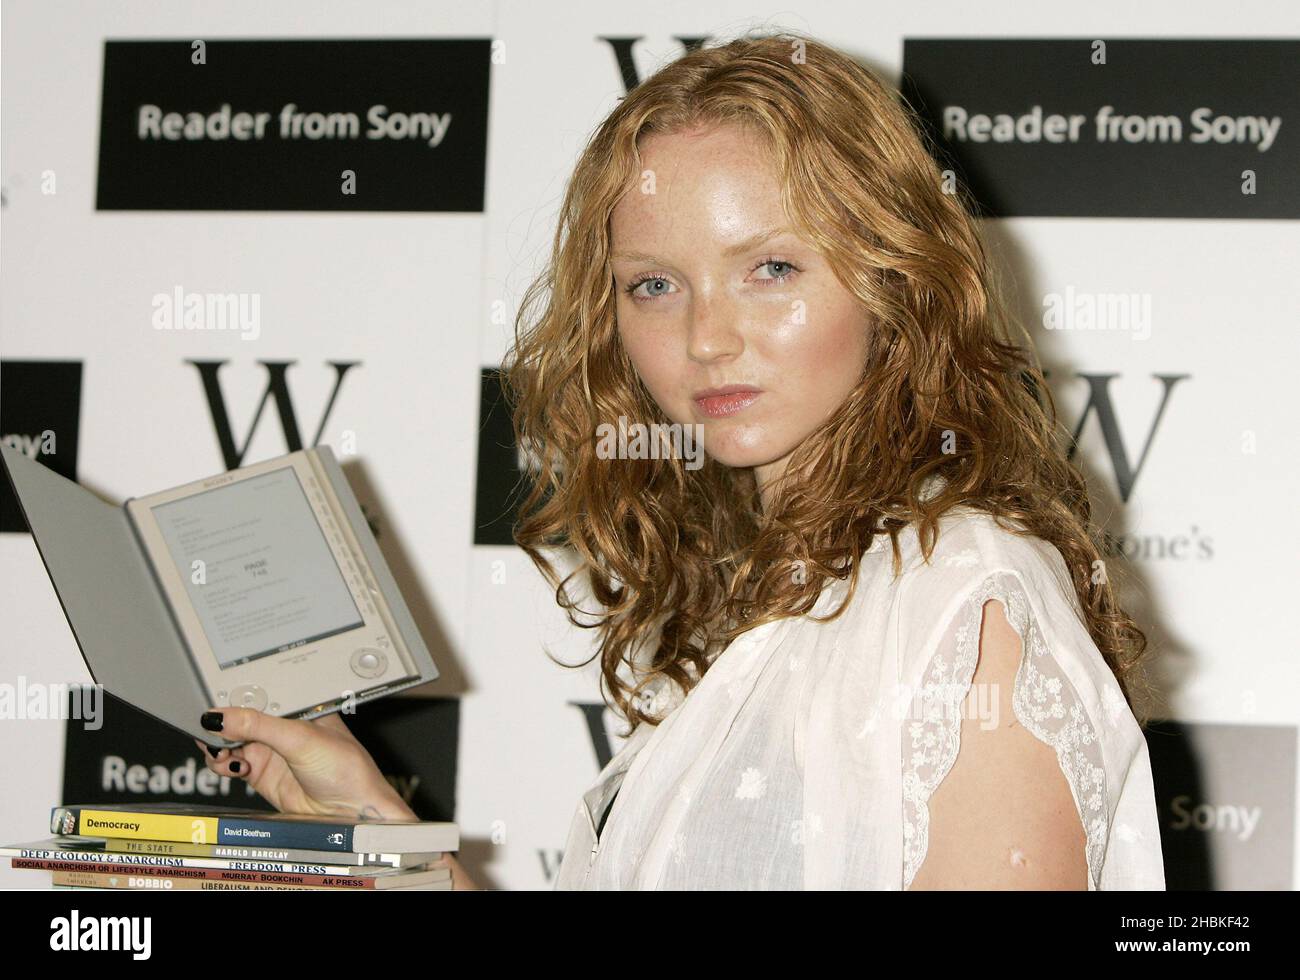 GESPERRT BIS 0001. DONNERSTAG, 4. SEPTEMBER 2008. Lily Cole stellt den neuen Reader von Sony in Waterstone im Zentrum von London vor. Stockfoto